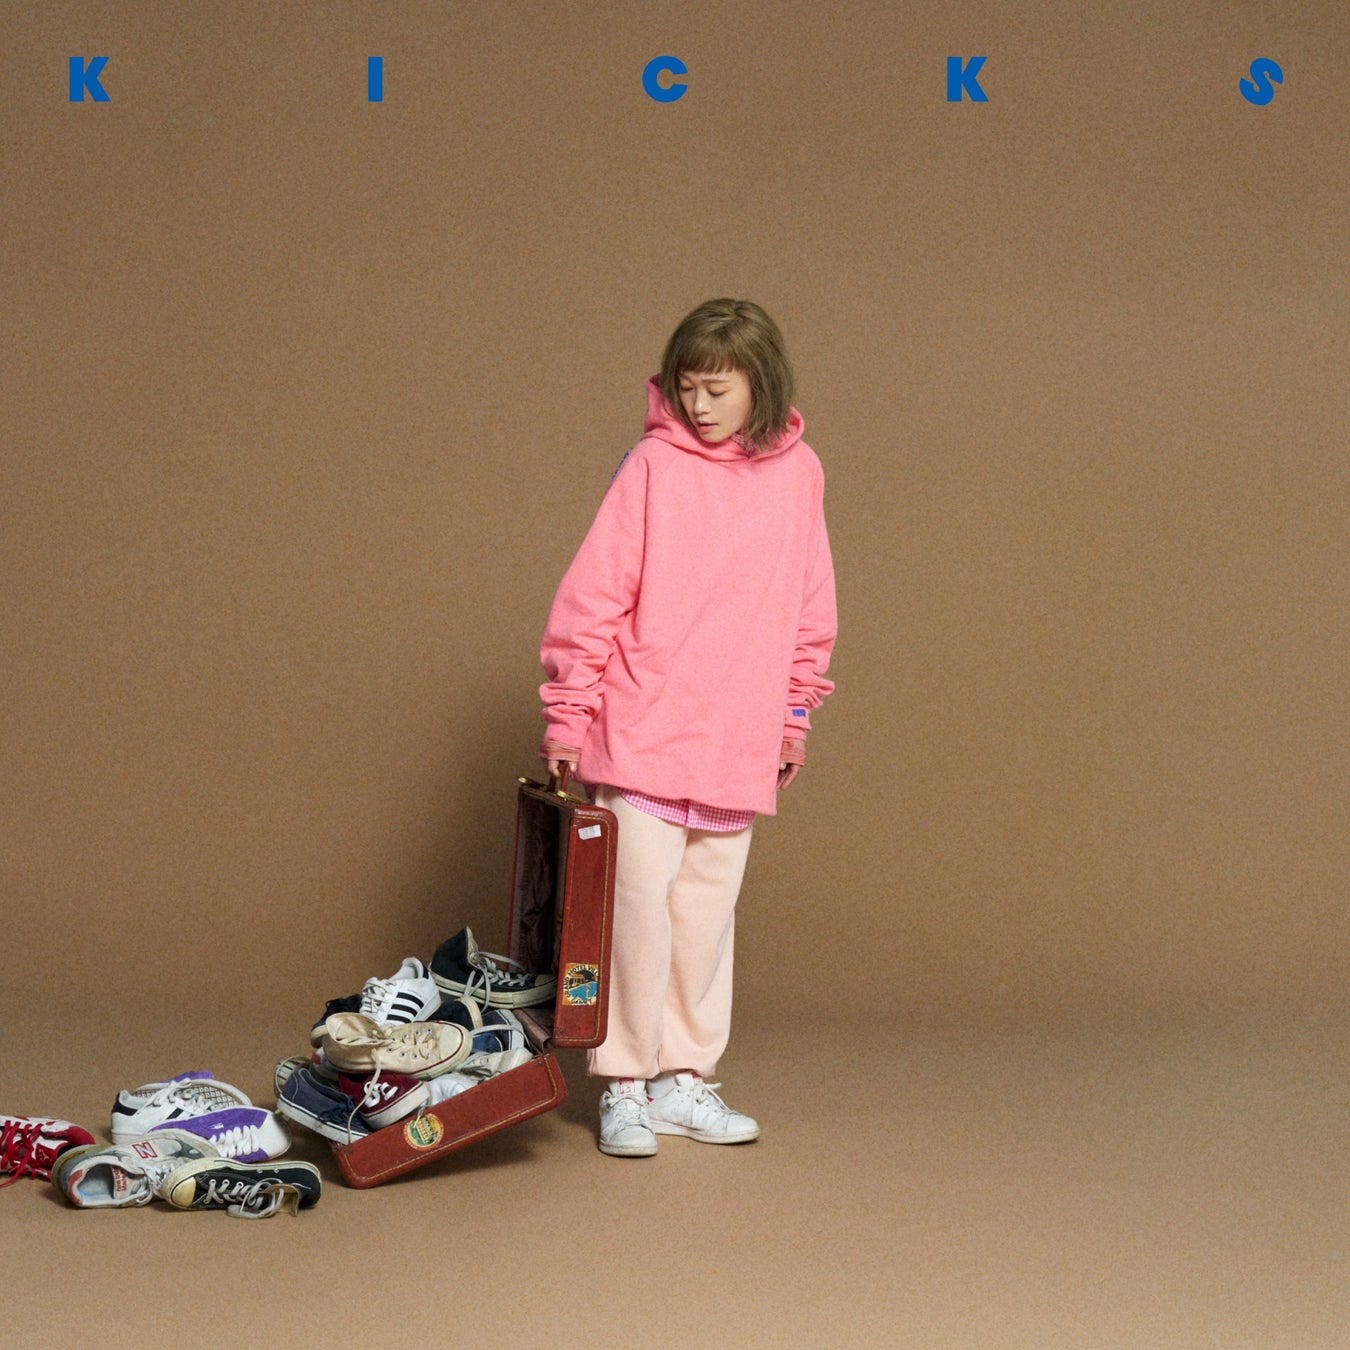 NakamuraEmiニューアルバム「KICKS」から、「火をつけろ」先行配信が決定！「KICKS」ポスターアンバサダー募...